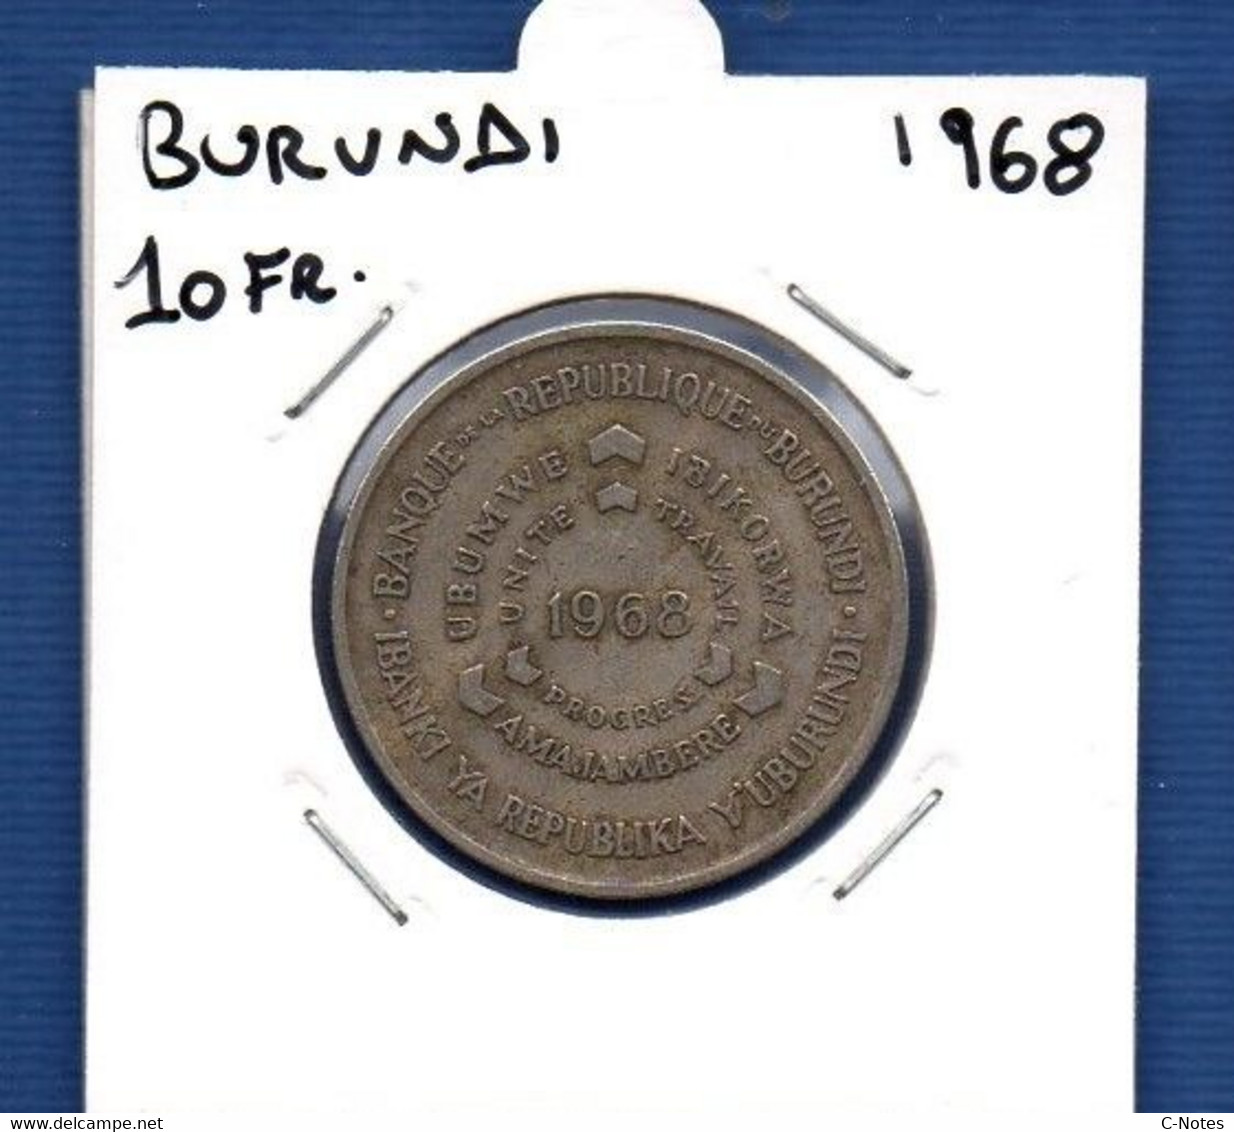 BURUNDI - 10 Francs 1968 -  See Photos -  Km 17 - Burundi